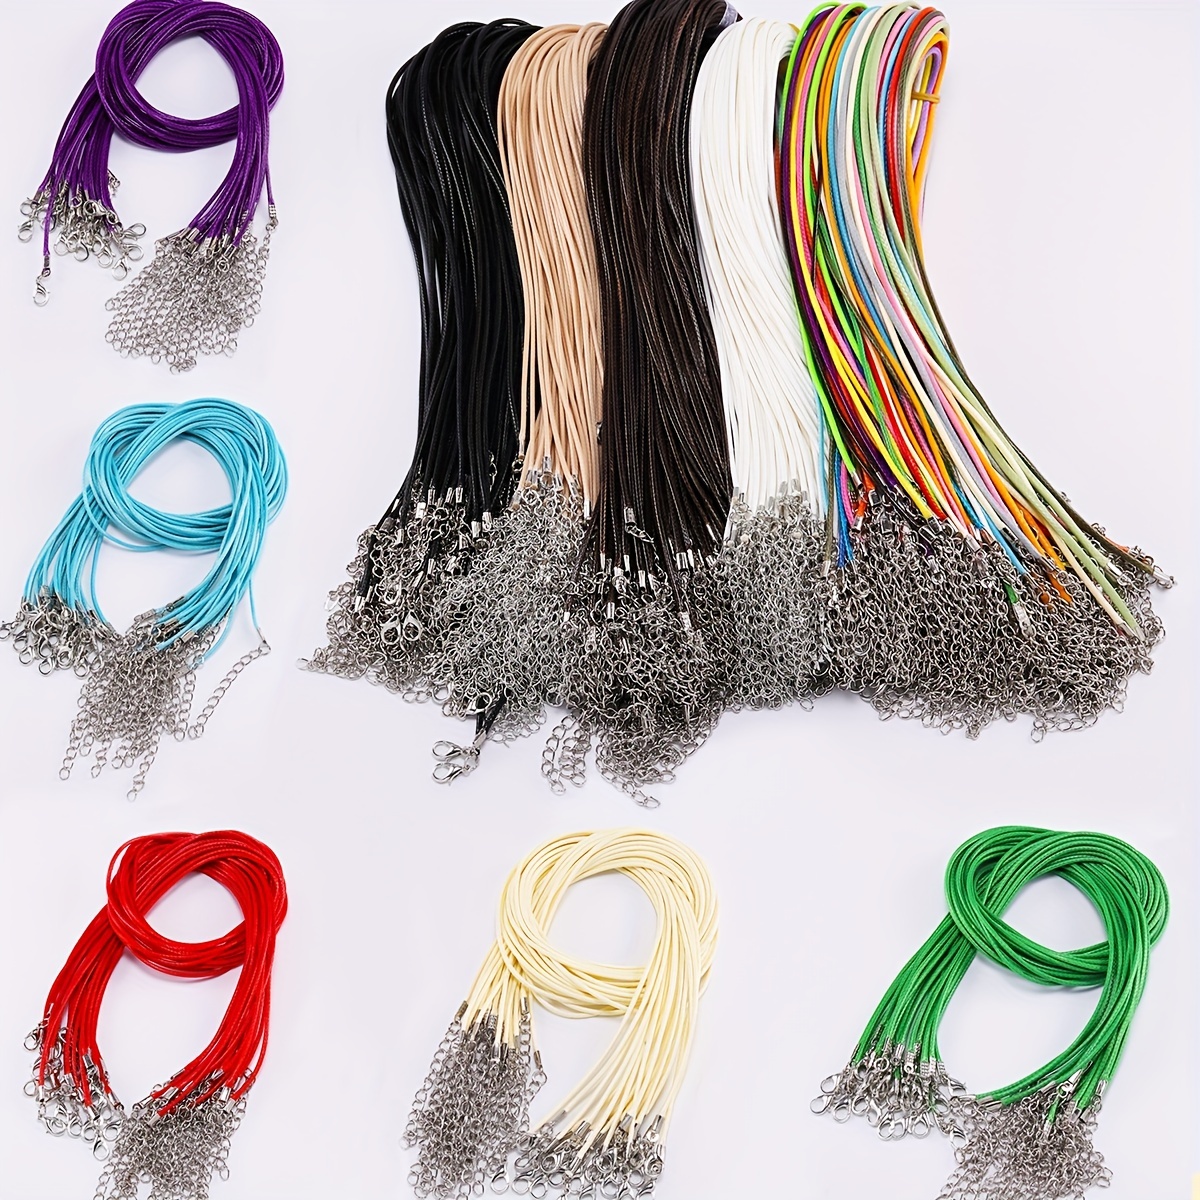 20pcs Adjustable Necklace Weave Red Black Rope DIY Necklace Jade Hanging  Neck Rope String for DIY